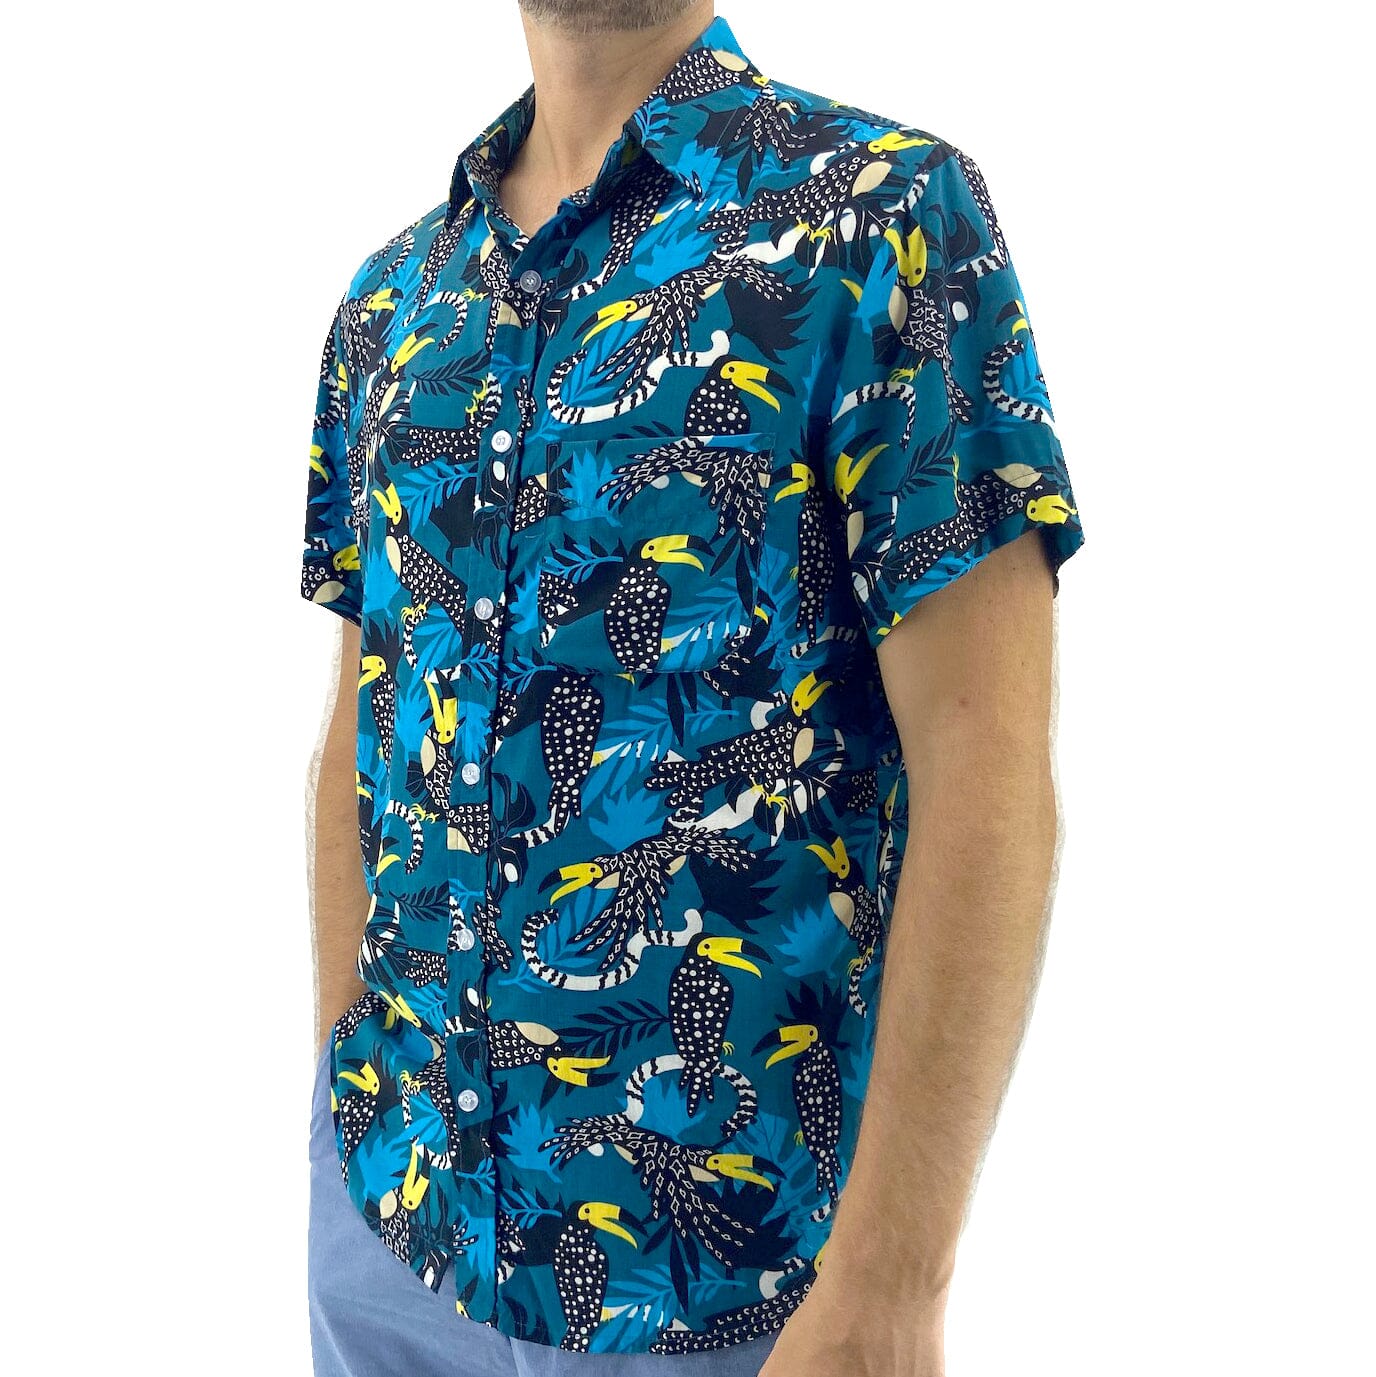 Men's Unique Toucan Bird Floral Leaves Print Button Up Hawaiian Shirt